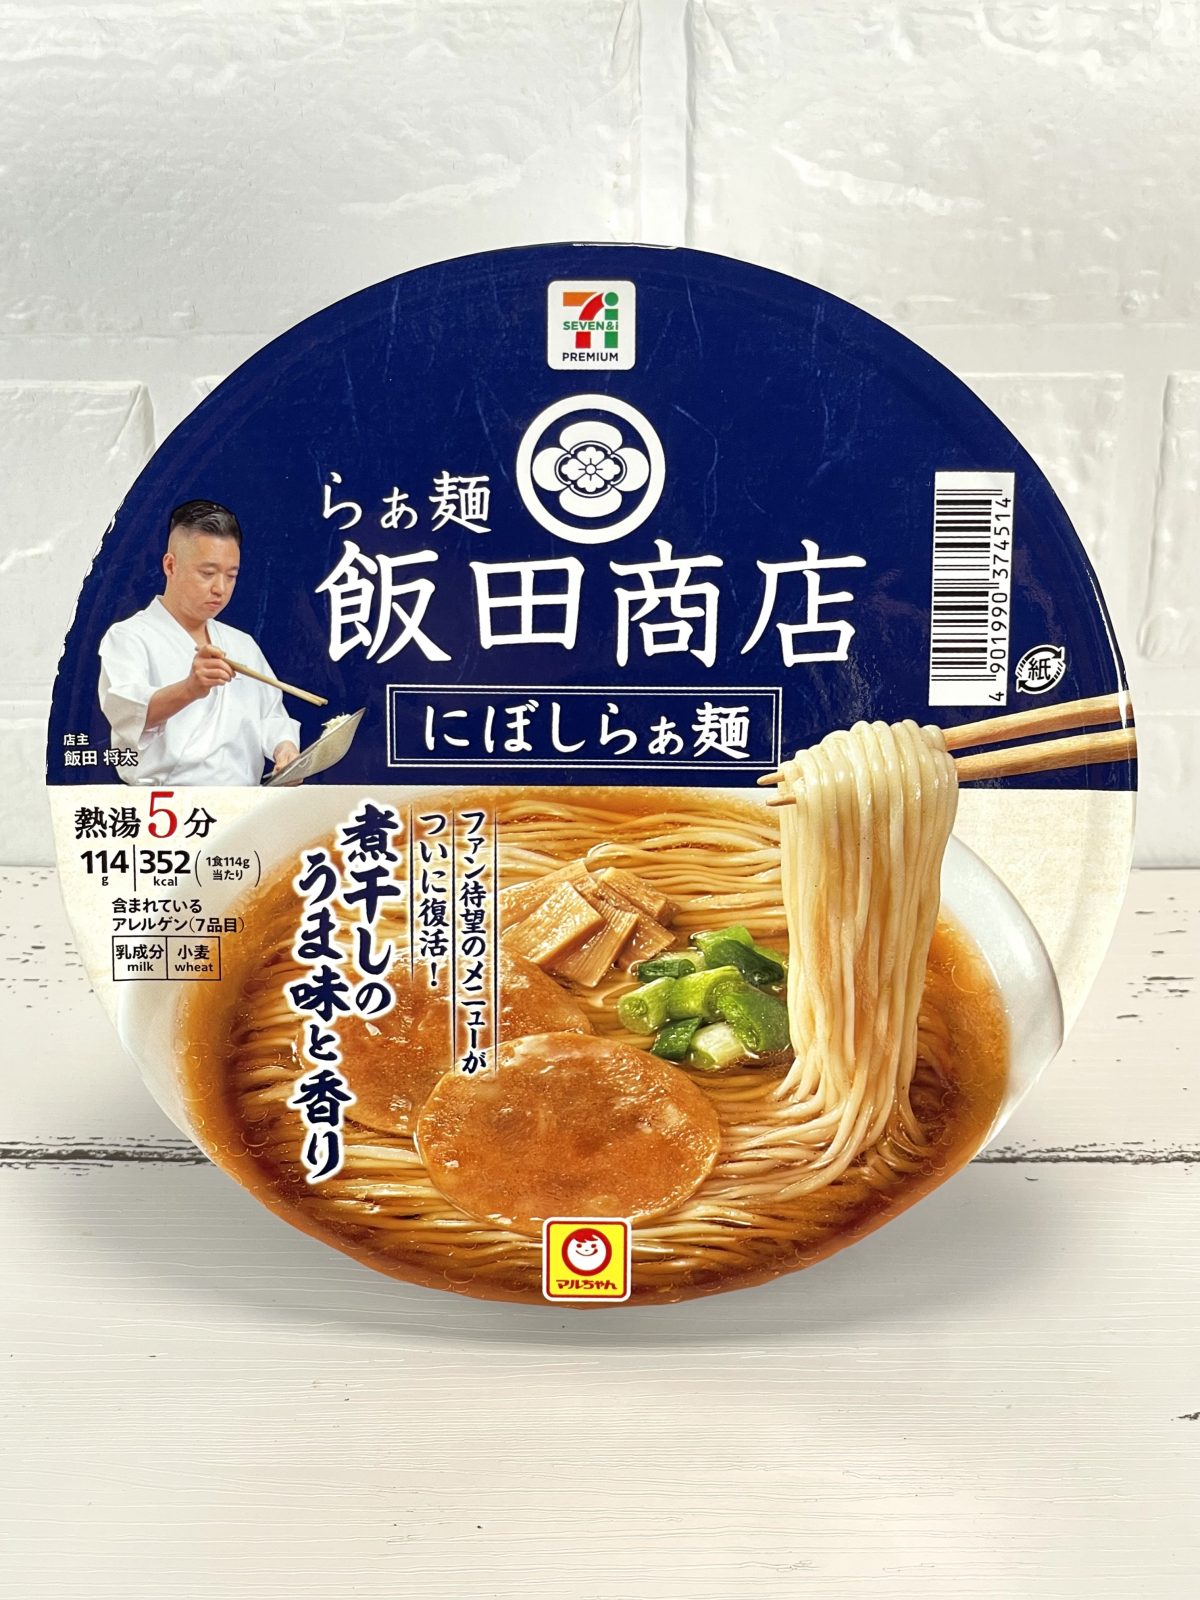 1.「セブンプレミアム飯田商店 にぼしらぁ麺」（東洋水産）